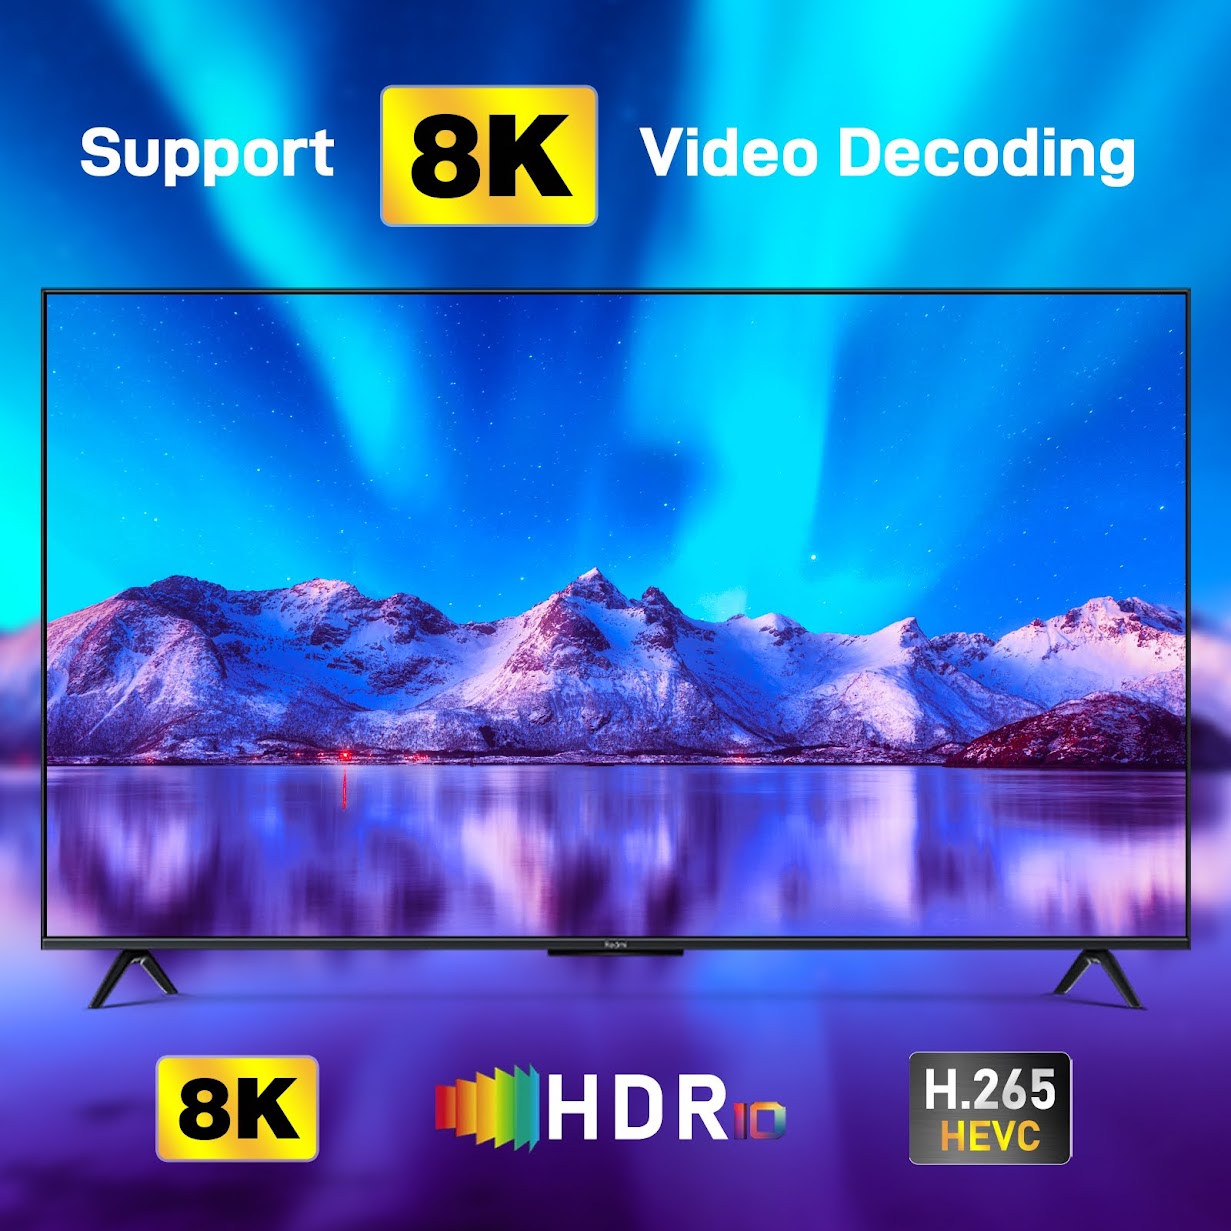 H96 Max Android TV Box COD Available at Rs 2800/piece, Karol Bagh, New  Delhi